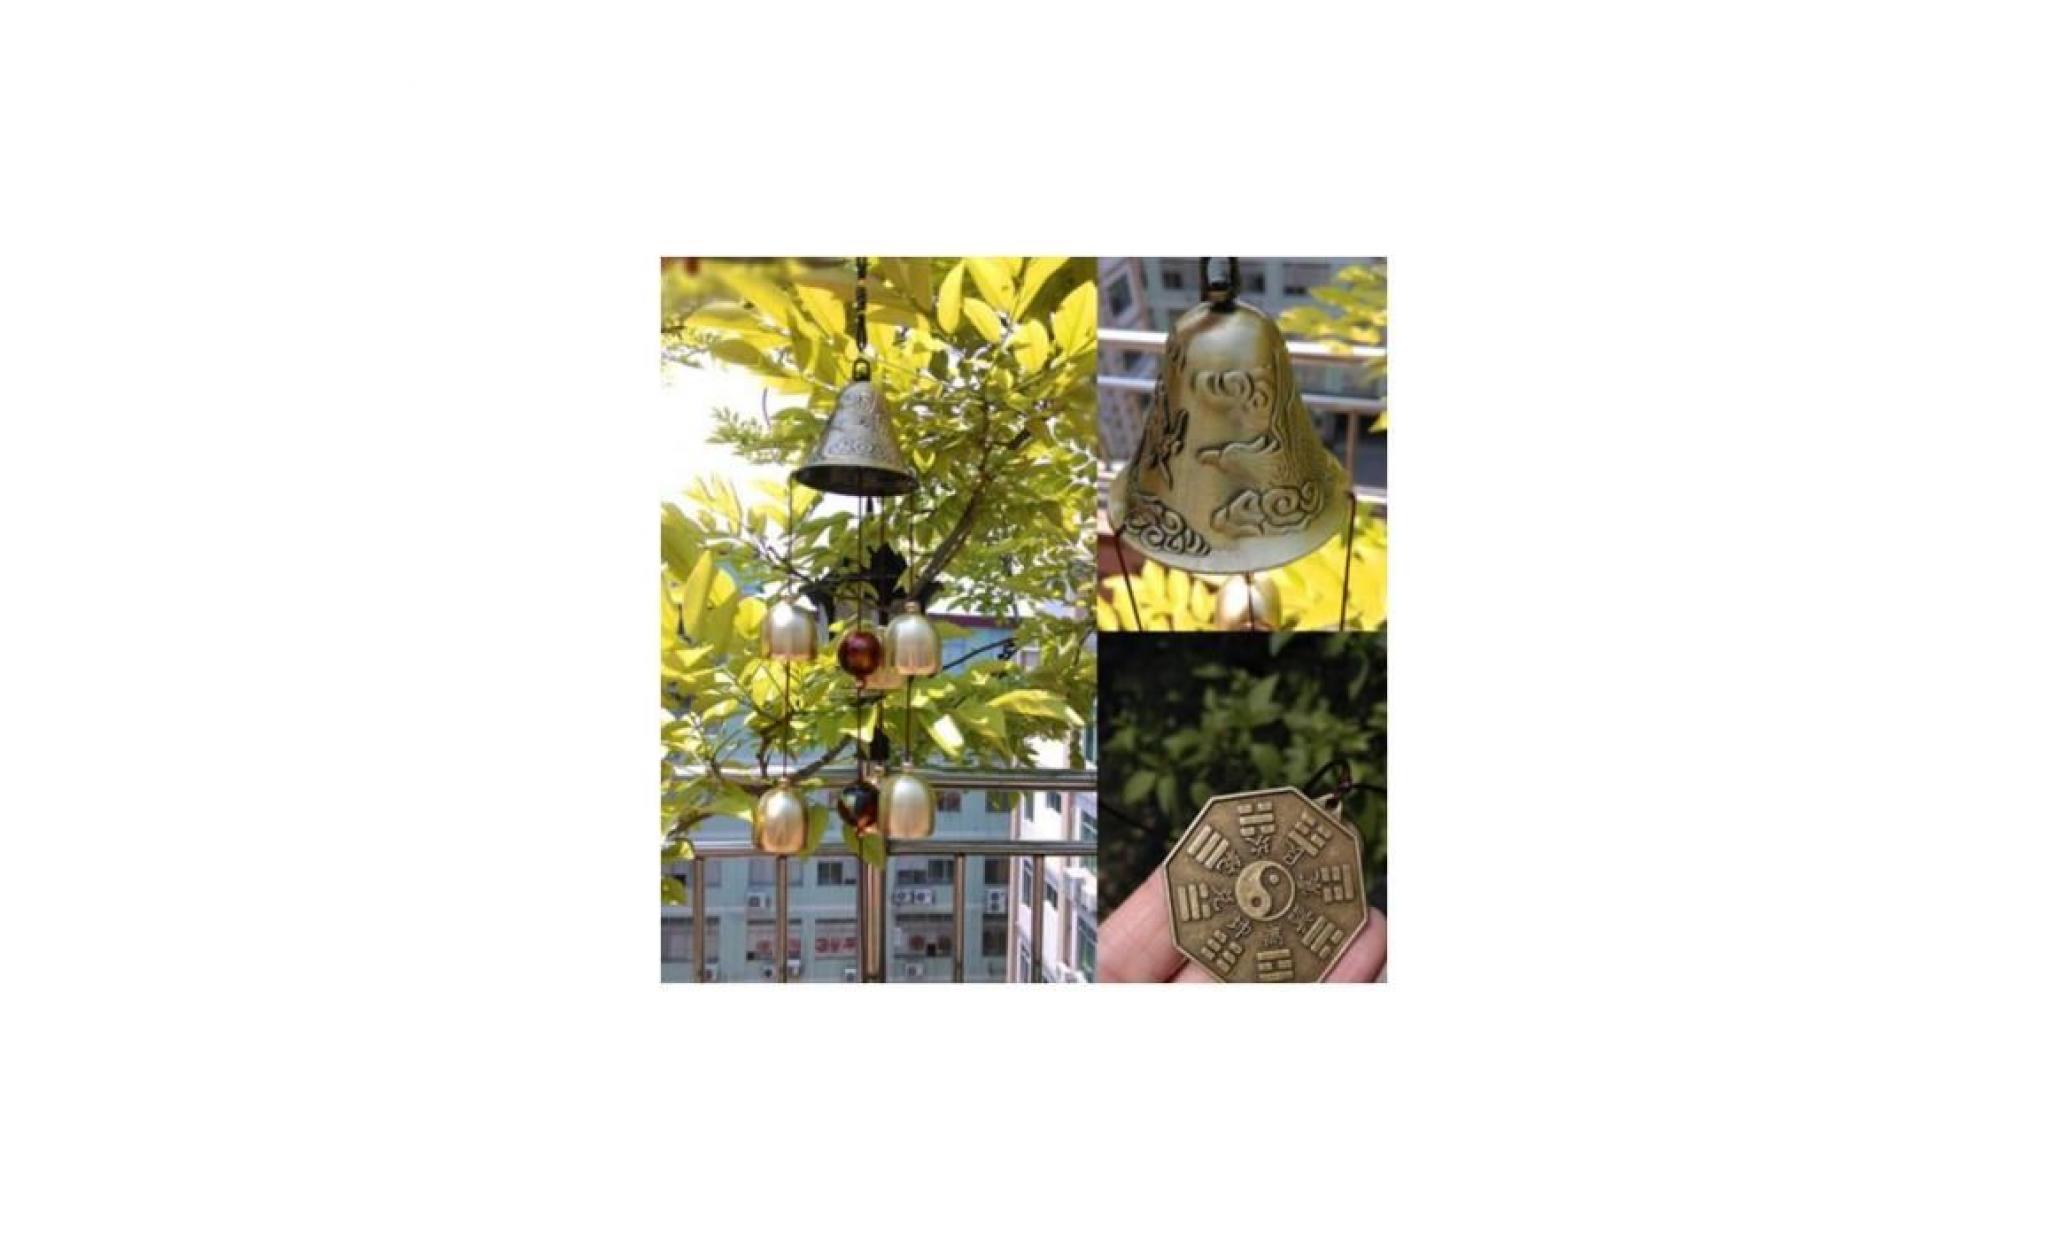 carillon bronze grosse cloche en métal carillon de vent feng shui maison jardin suspendu hochets décor pas cher